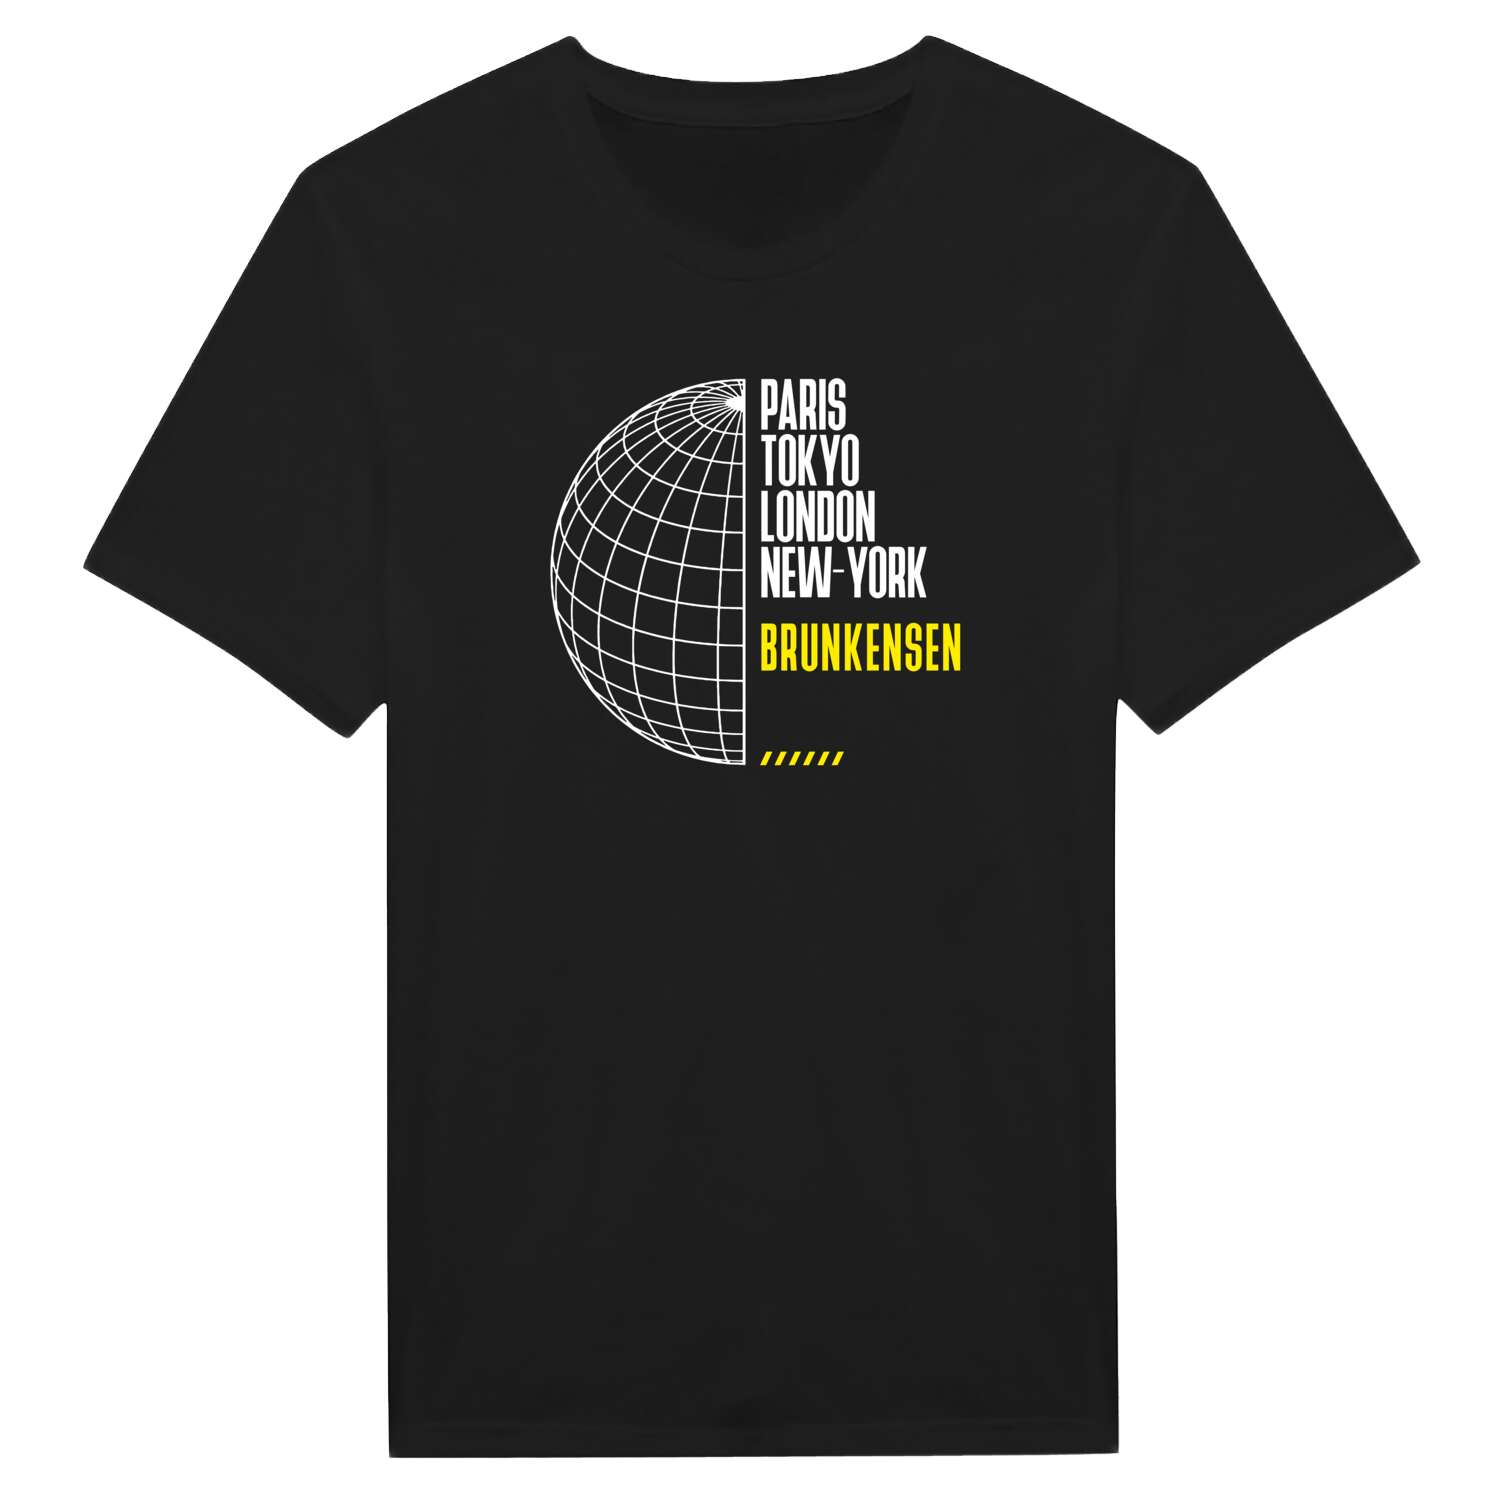 Brunkensen T-Shirt »Paris Tokyo London«